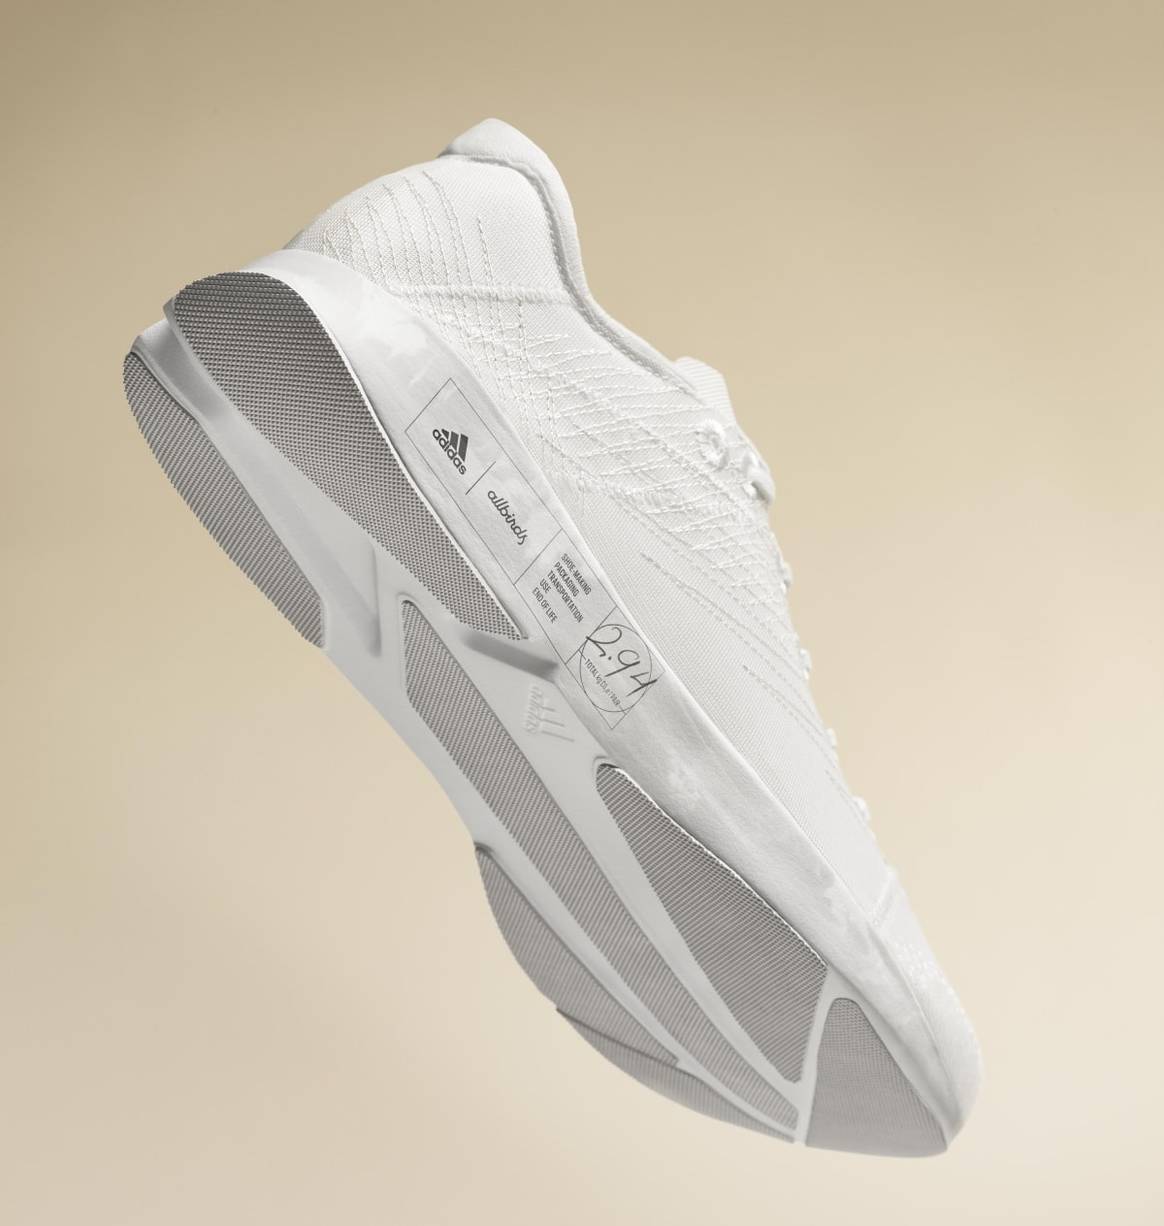 Adidas et Allbirds dévoilent la première chaussure avec une empreinte carbone inférieure à 3kg